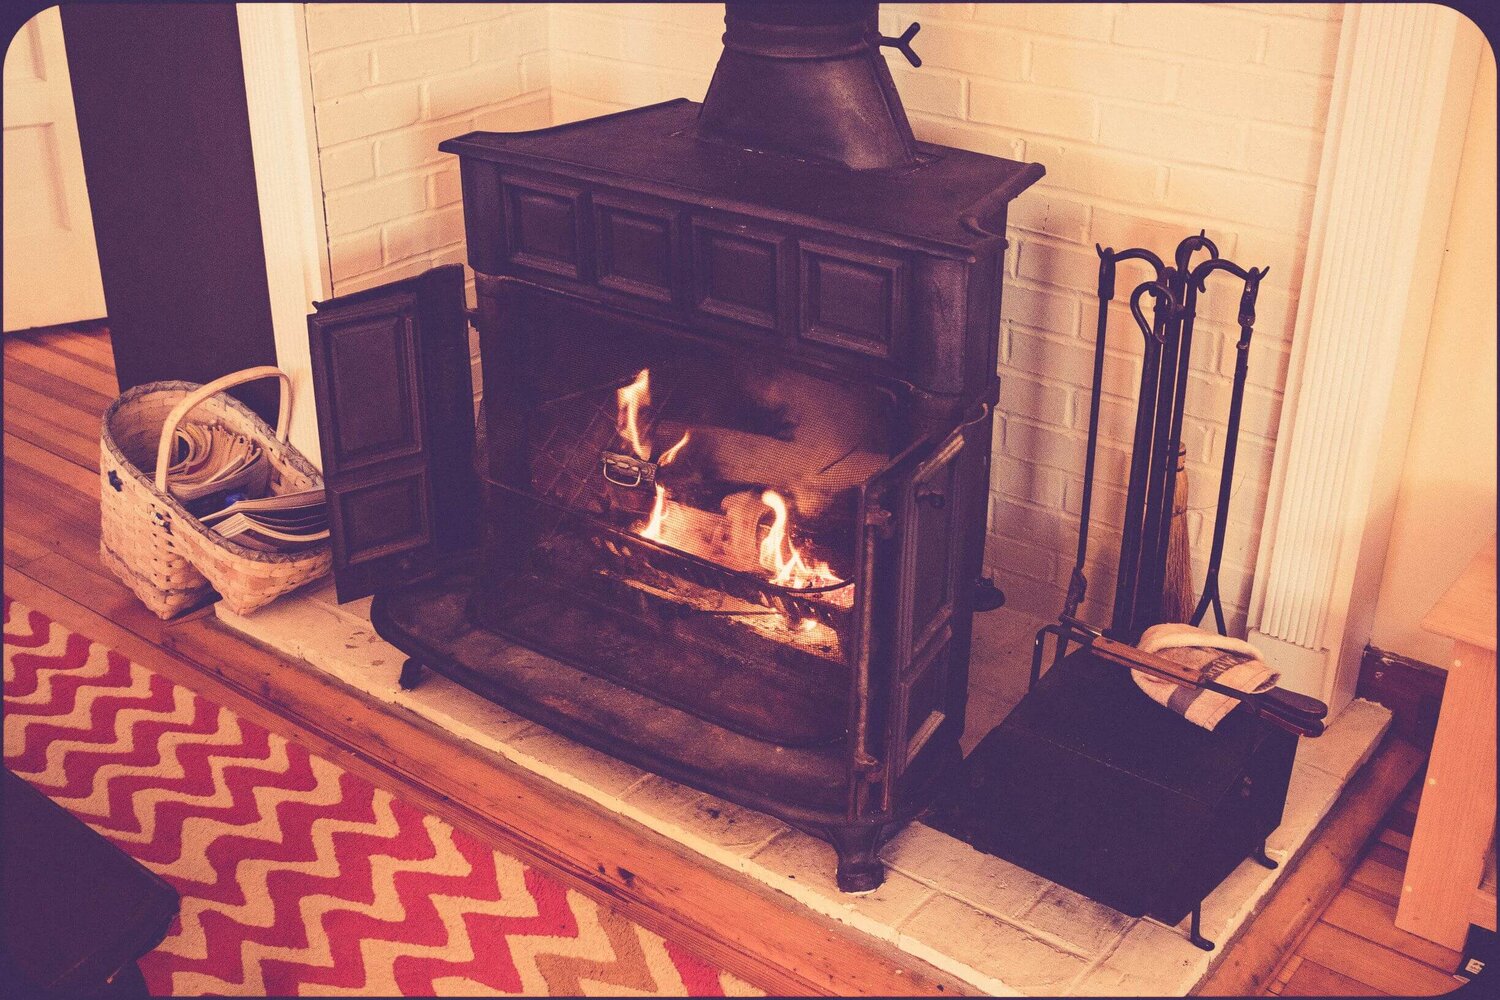 lit-fireplace-craignair-inn-midcoast-maine